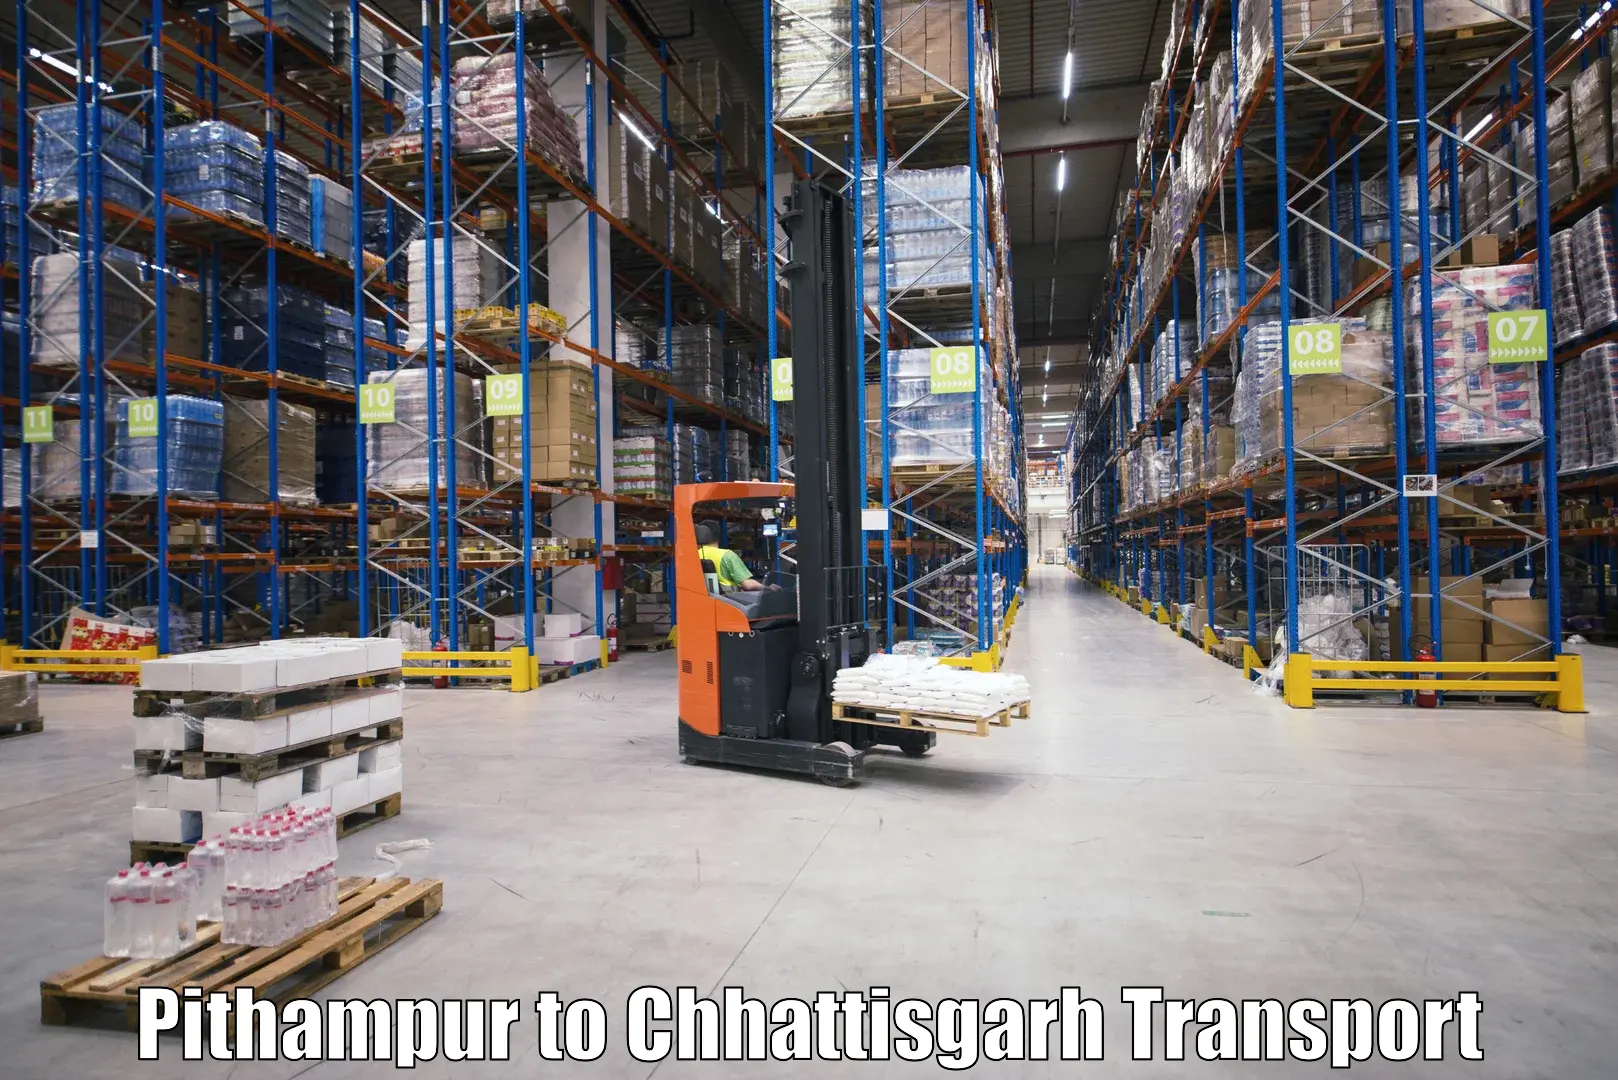 Interstate goods transport in Pithampur to Mandhar